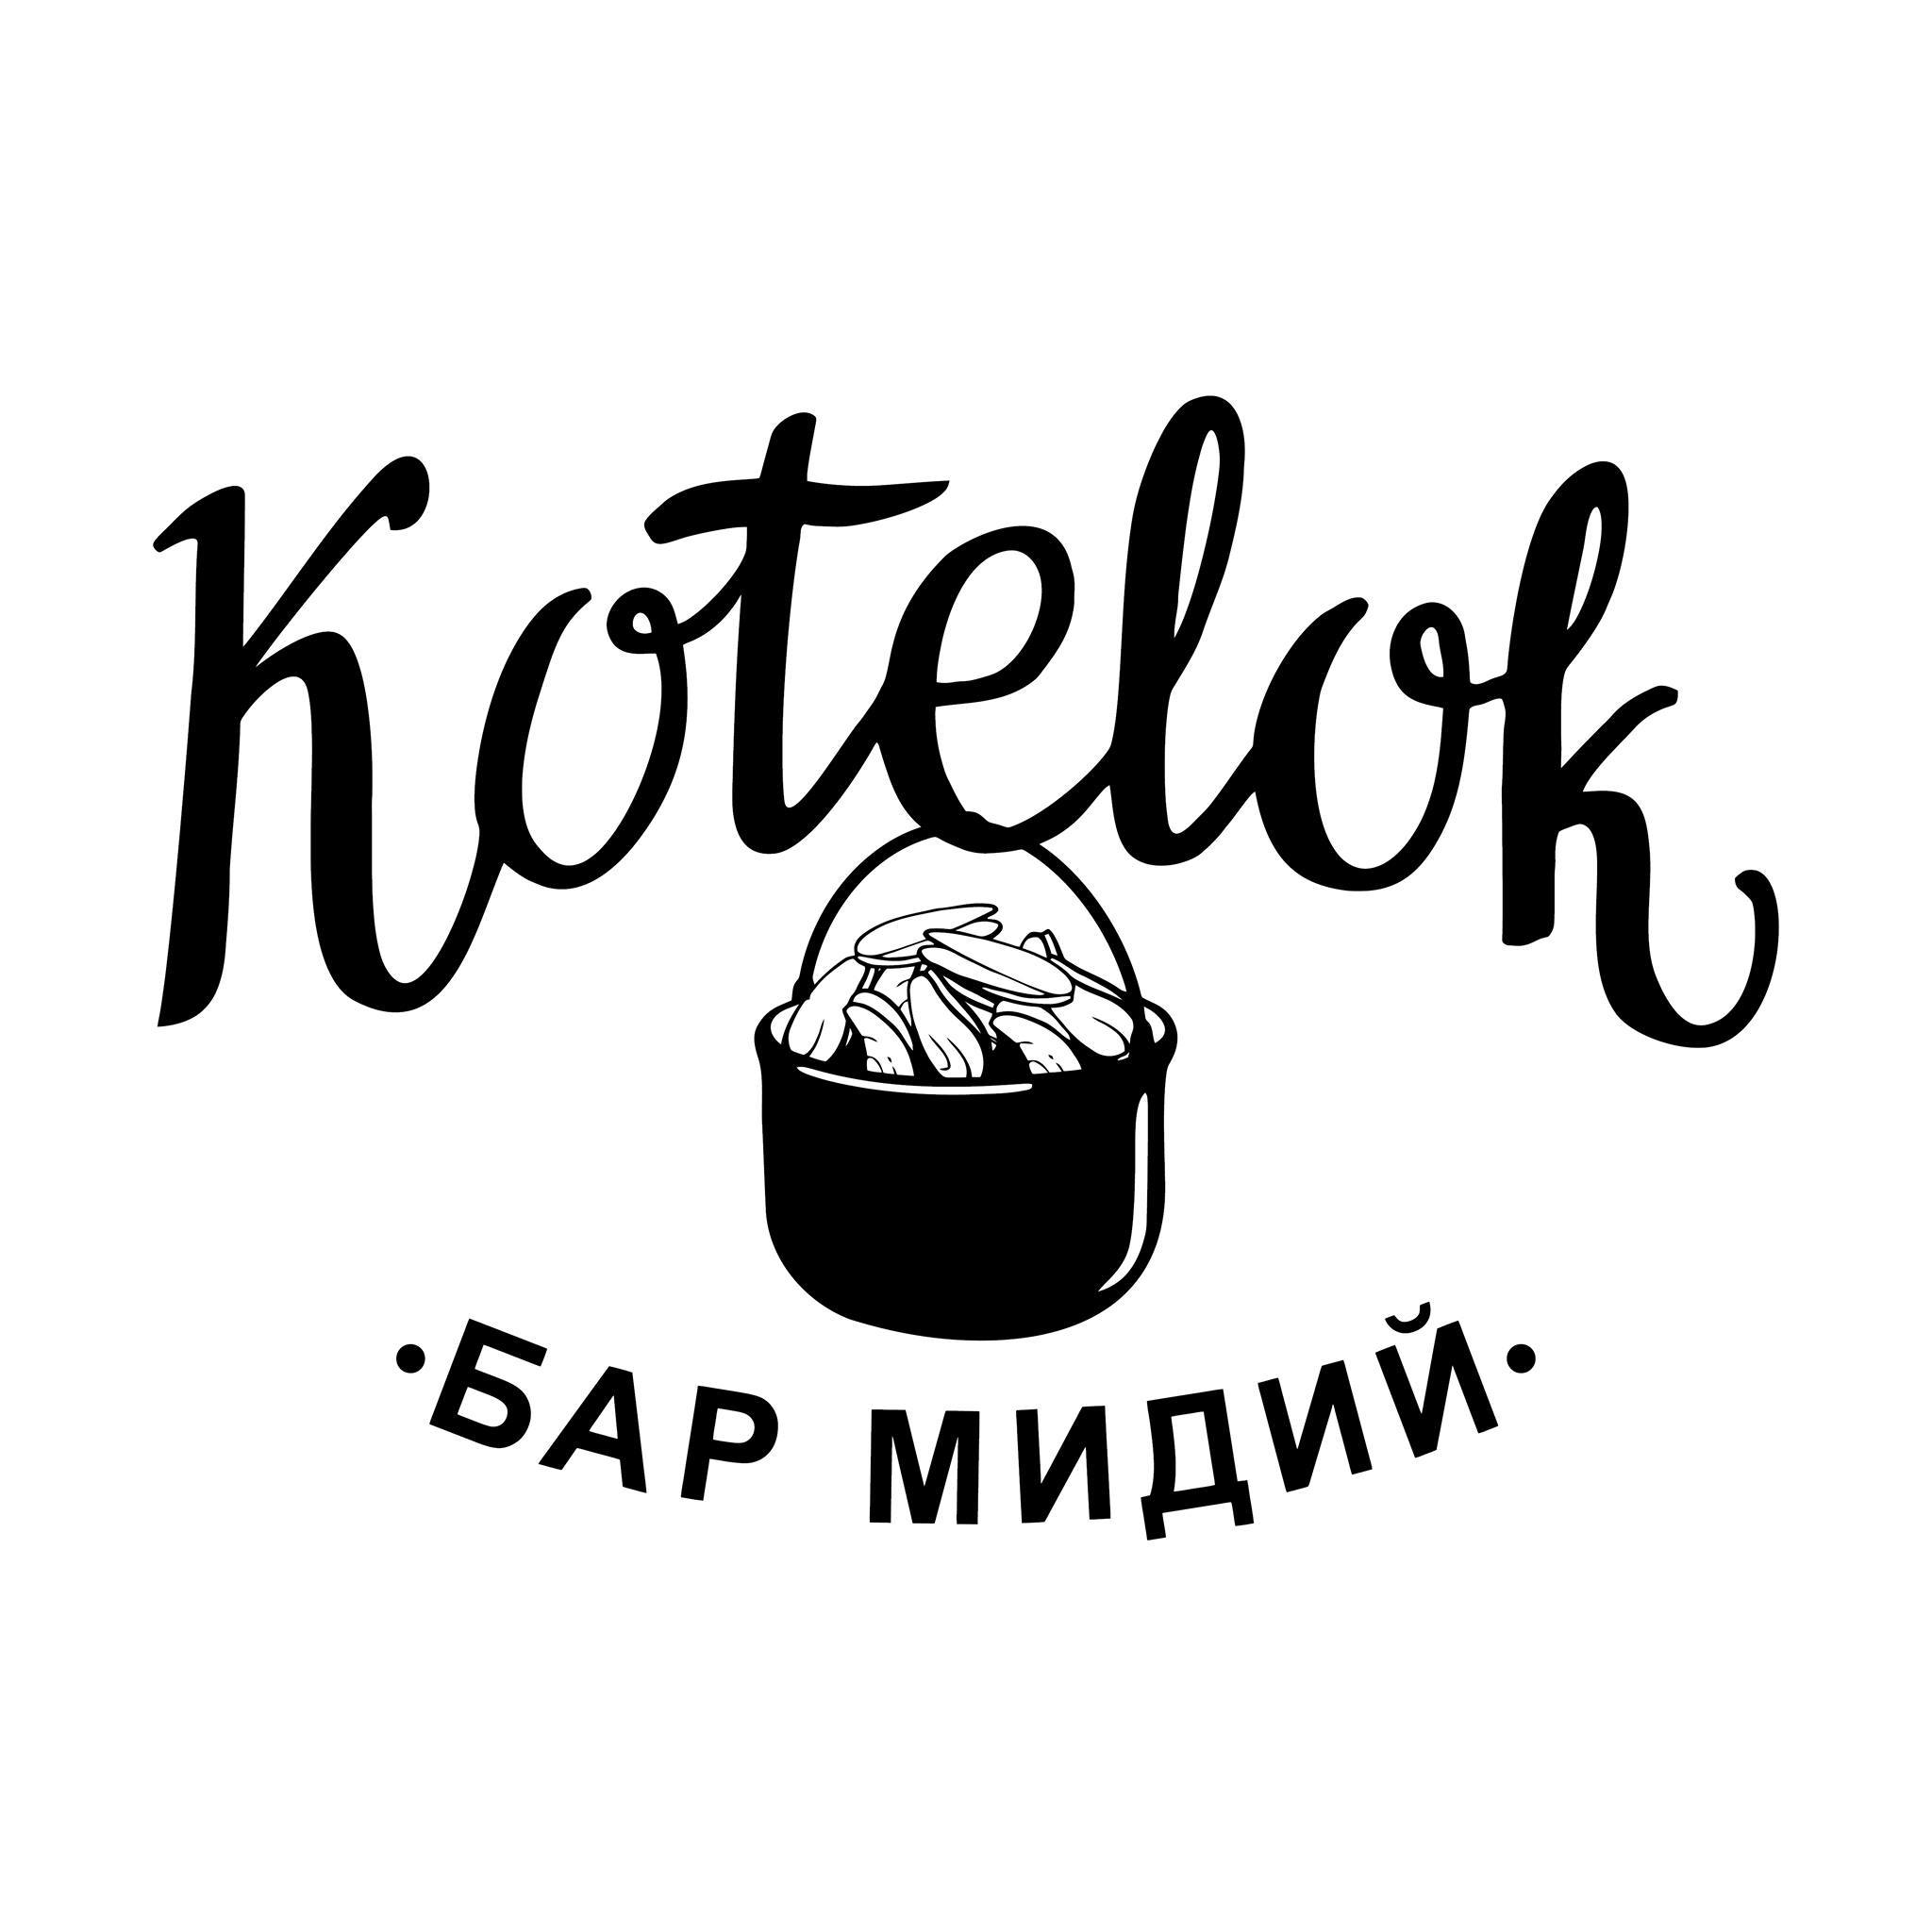 Kotelok - Бар Мидий